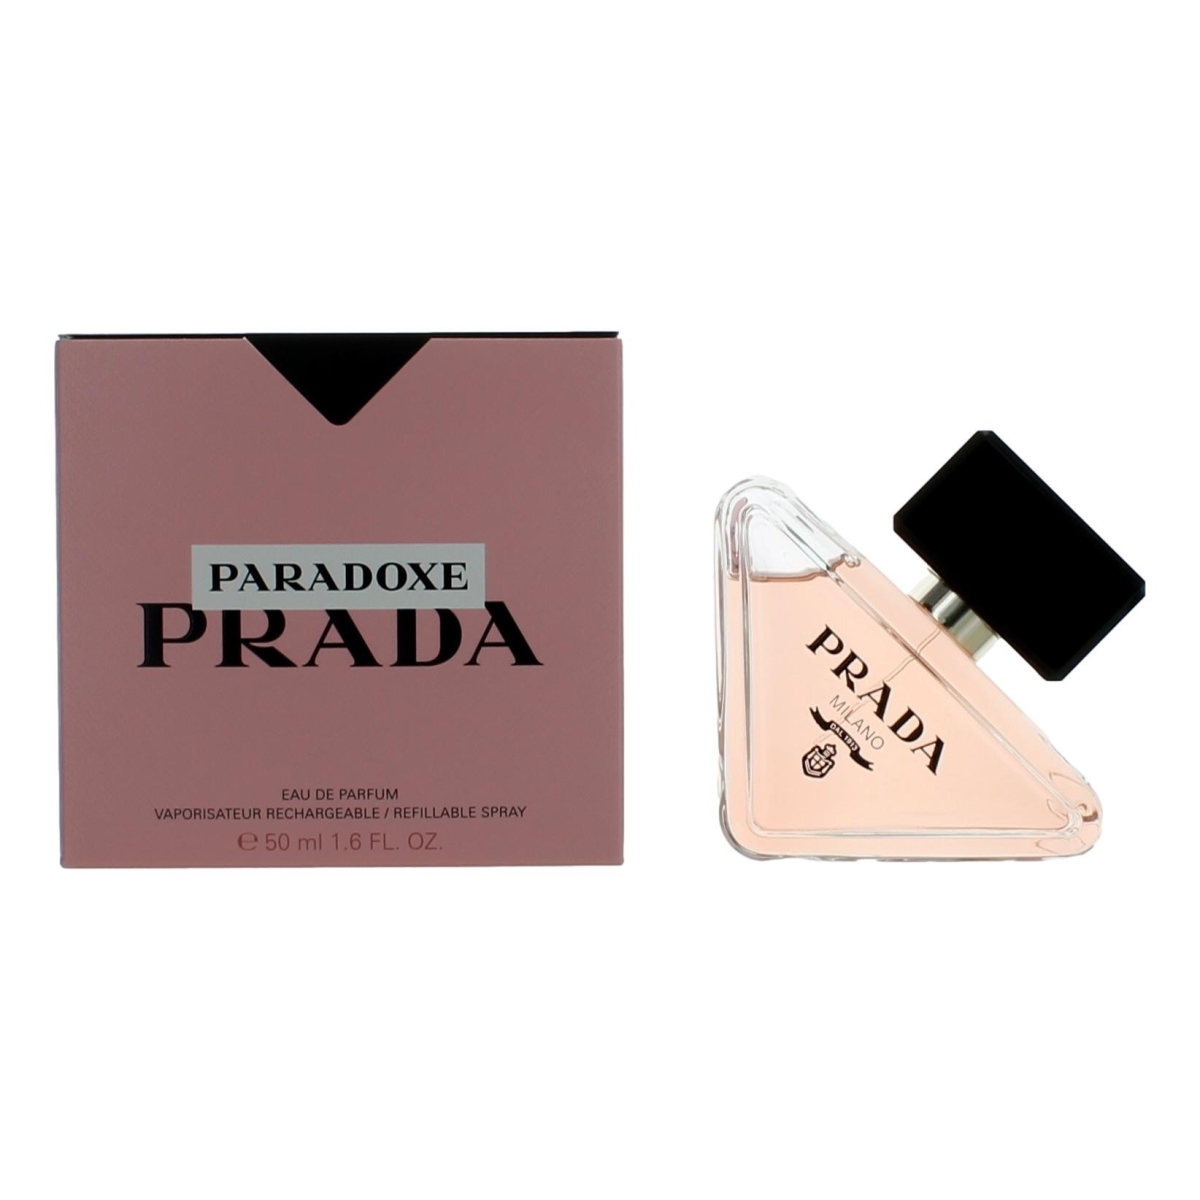 Prada awprpx17ps 1.6 oz Paradoxe Eau De Parfum Spray for Women